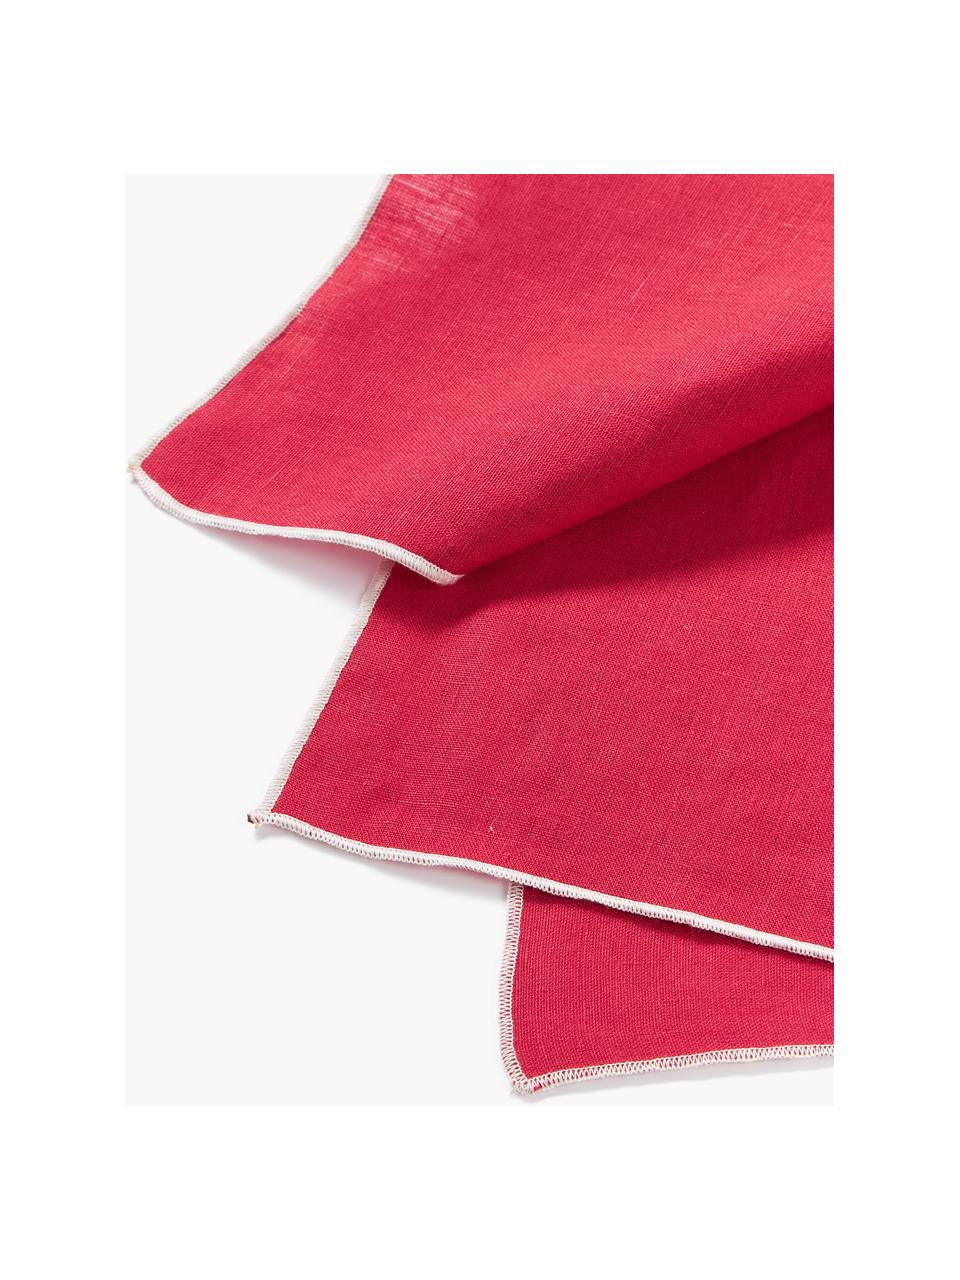 Serwetka z lnu Kennedy, 4 szt., 100% len prany

Len to naturalna tkanina cechująca się przewiewnością, trwałością i niezwyklą miękkością.

Ten produkt został przetestowany pod kątem substancji szkodliwych i certyfikowany zgodnie z STANDARD 100 by OEKO-TEX® 6760CIT, CITEVE., Czerwony, biały, S 45 x D 45 cm